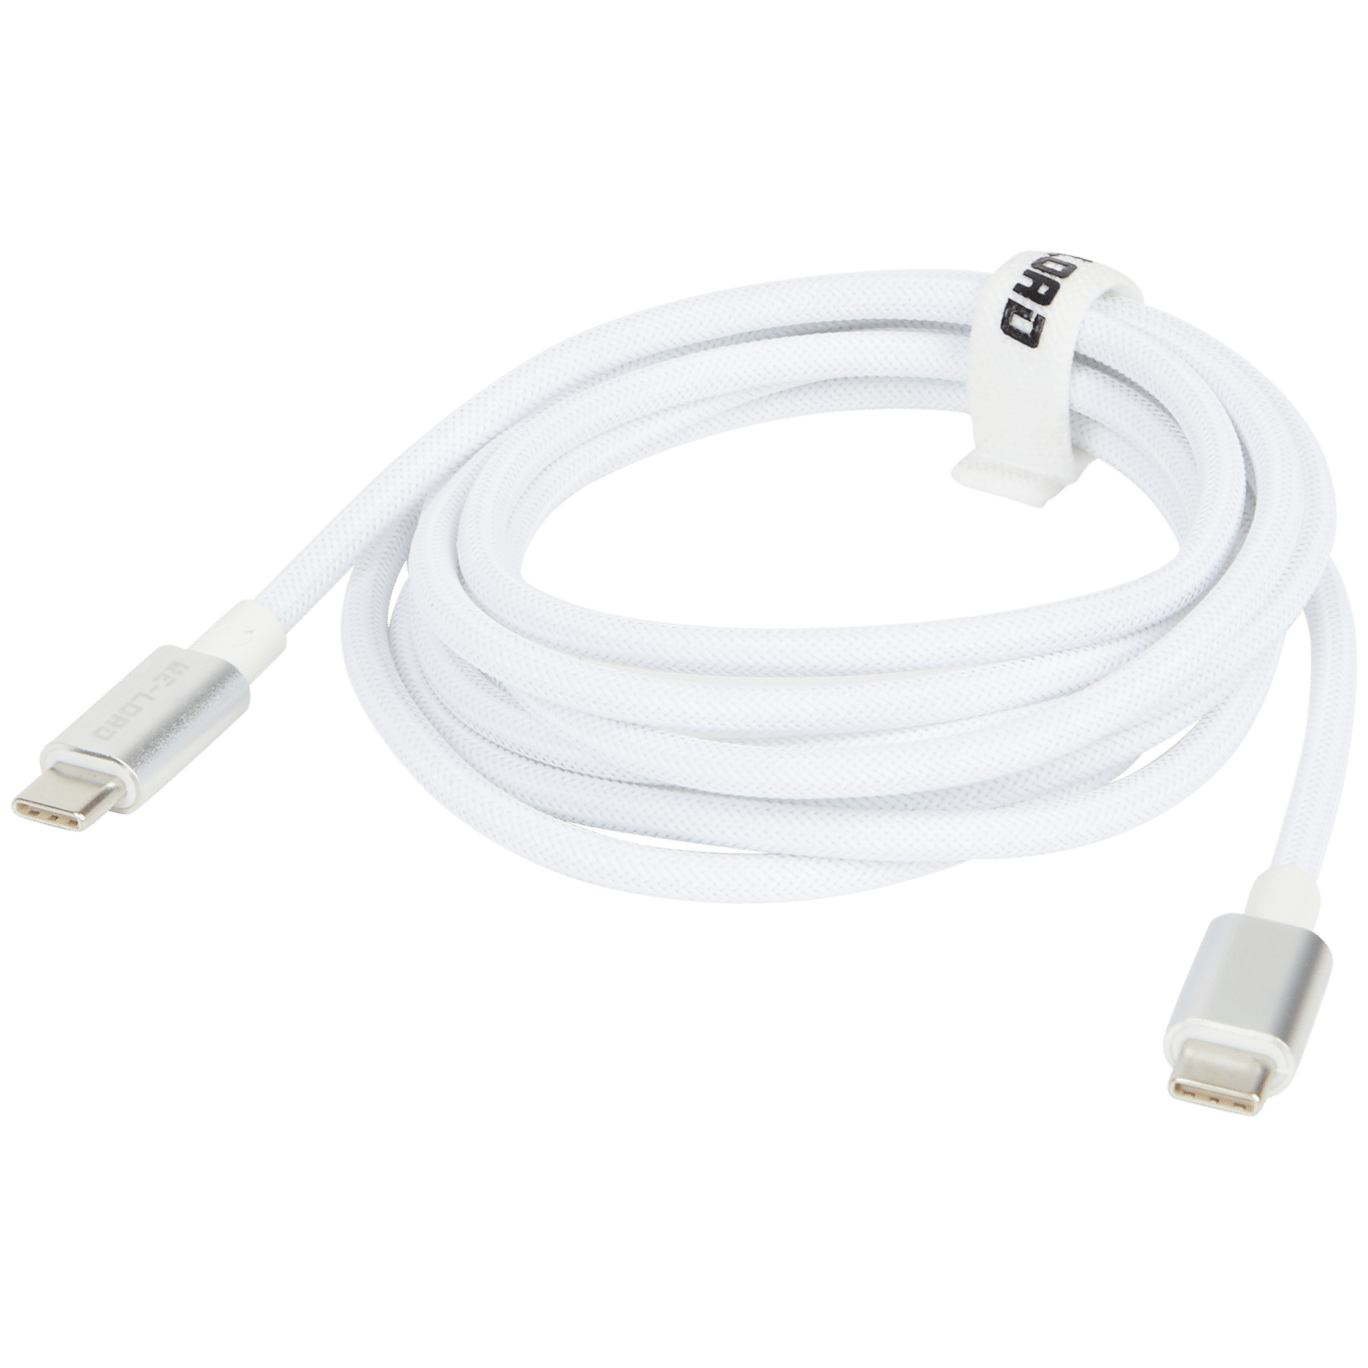 Cable de carga y de datos de alta velocidad Re-load De USB-C a USB-C